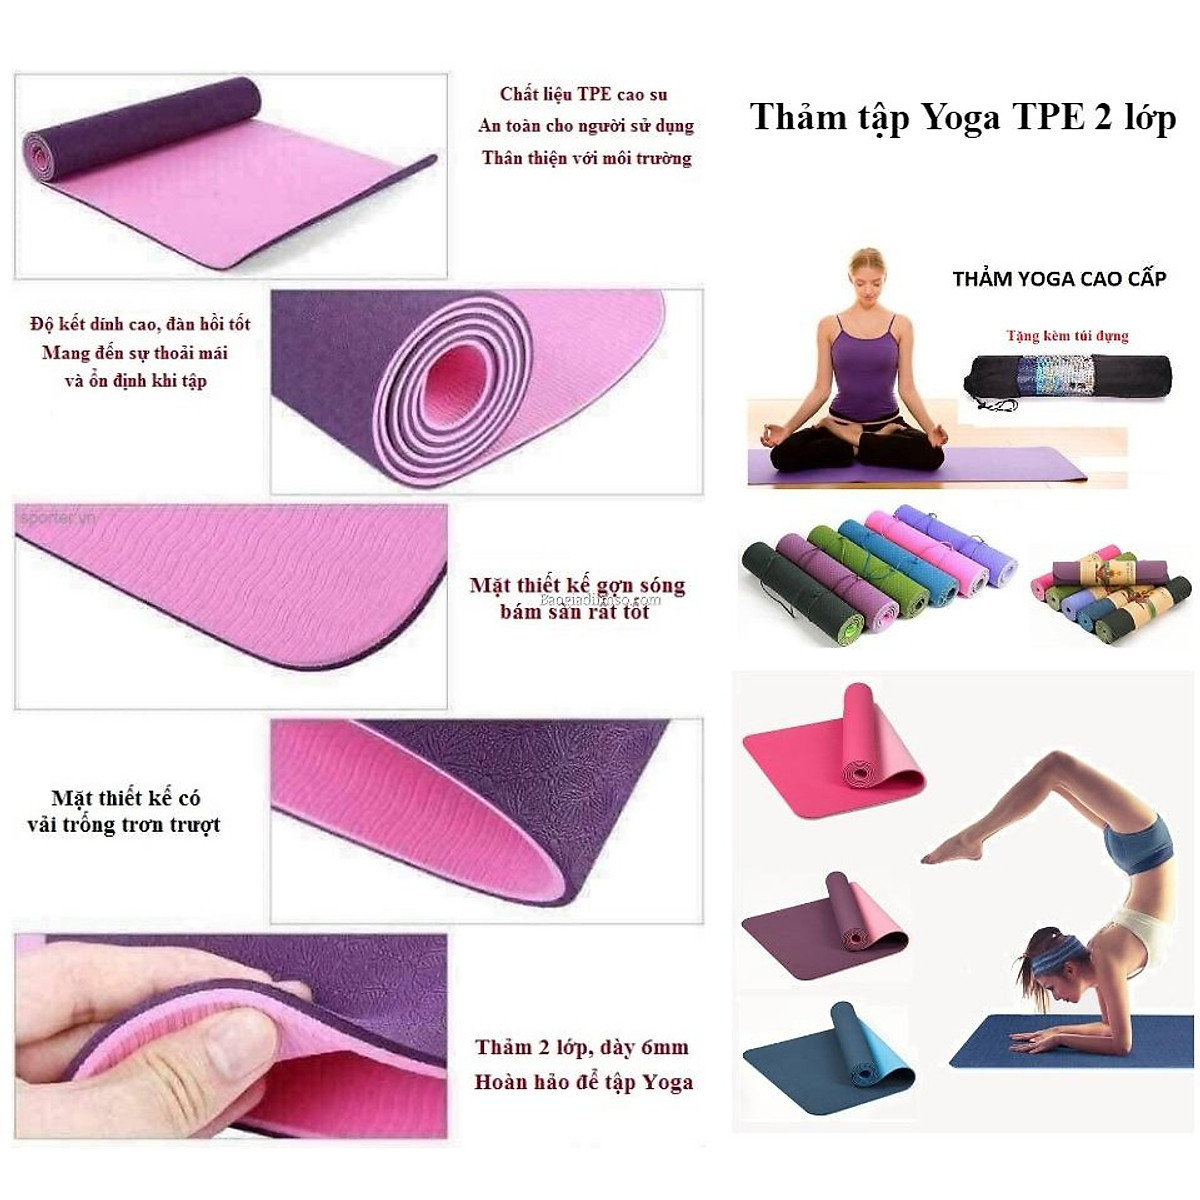 Thảm Tập Yoga TPE 2 Lớp 6mm - Giao Màu Ngẫu Nhiên